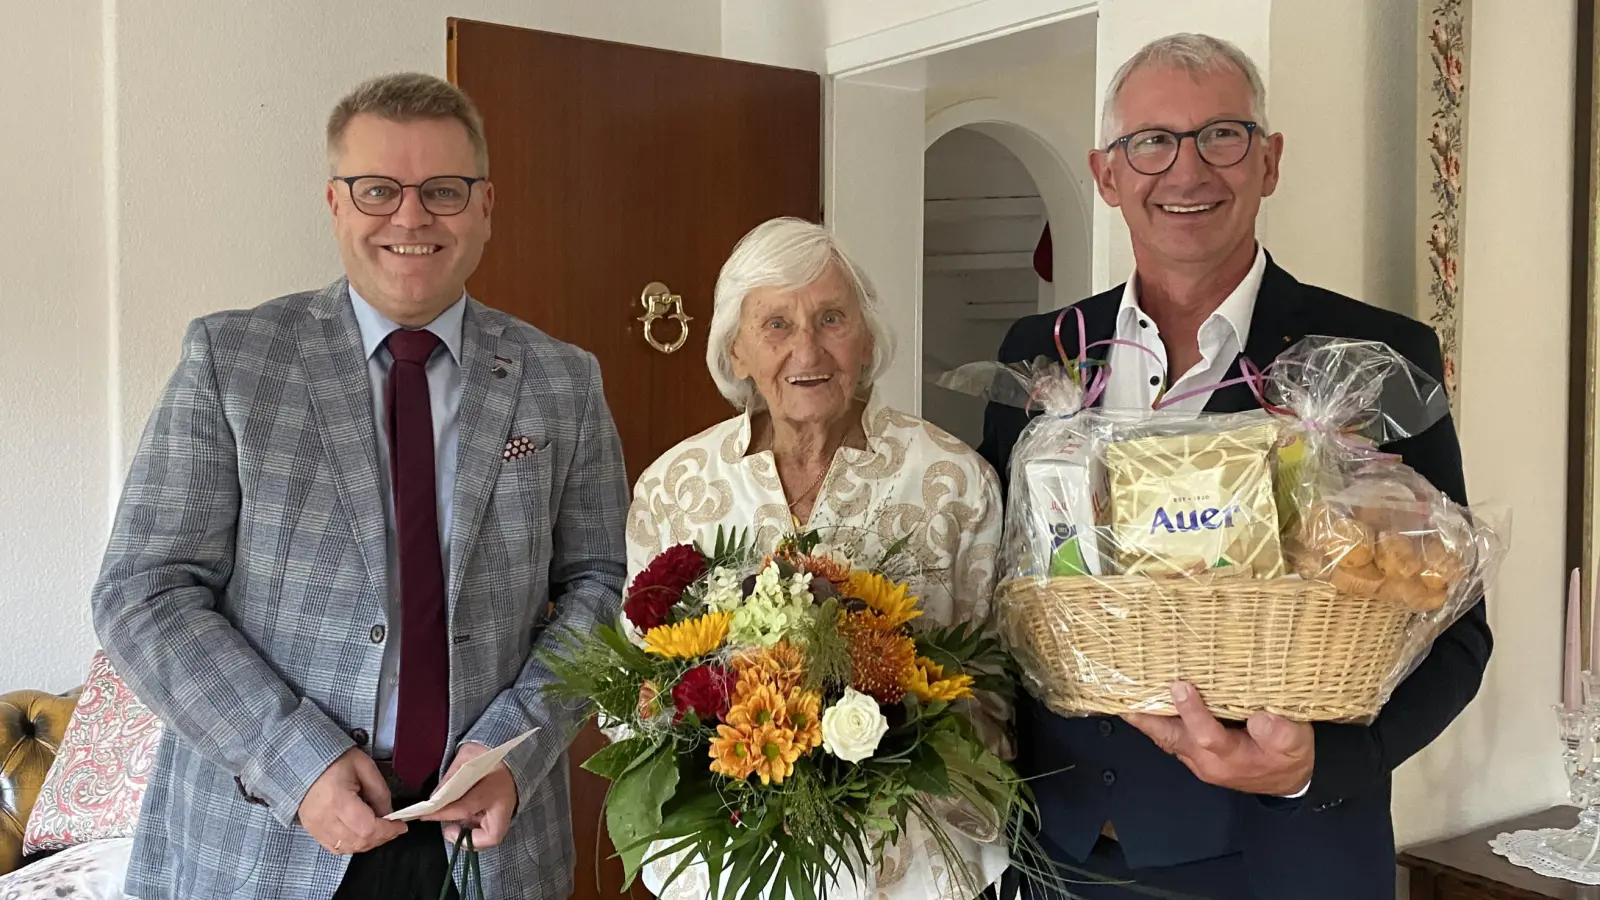 Von den rund 1400 Menschen, die in der Gemeinde Geslau leben, ist Elli Mohr der älteste. Zum 102. Geburtstag gratulierten ihr Bürgermeister Richard Strauß (rechts) und stellvertretender Landrat Stefan Horndasch. (Foto: privat)